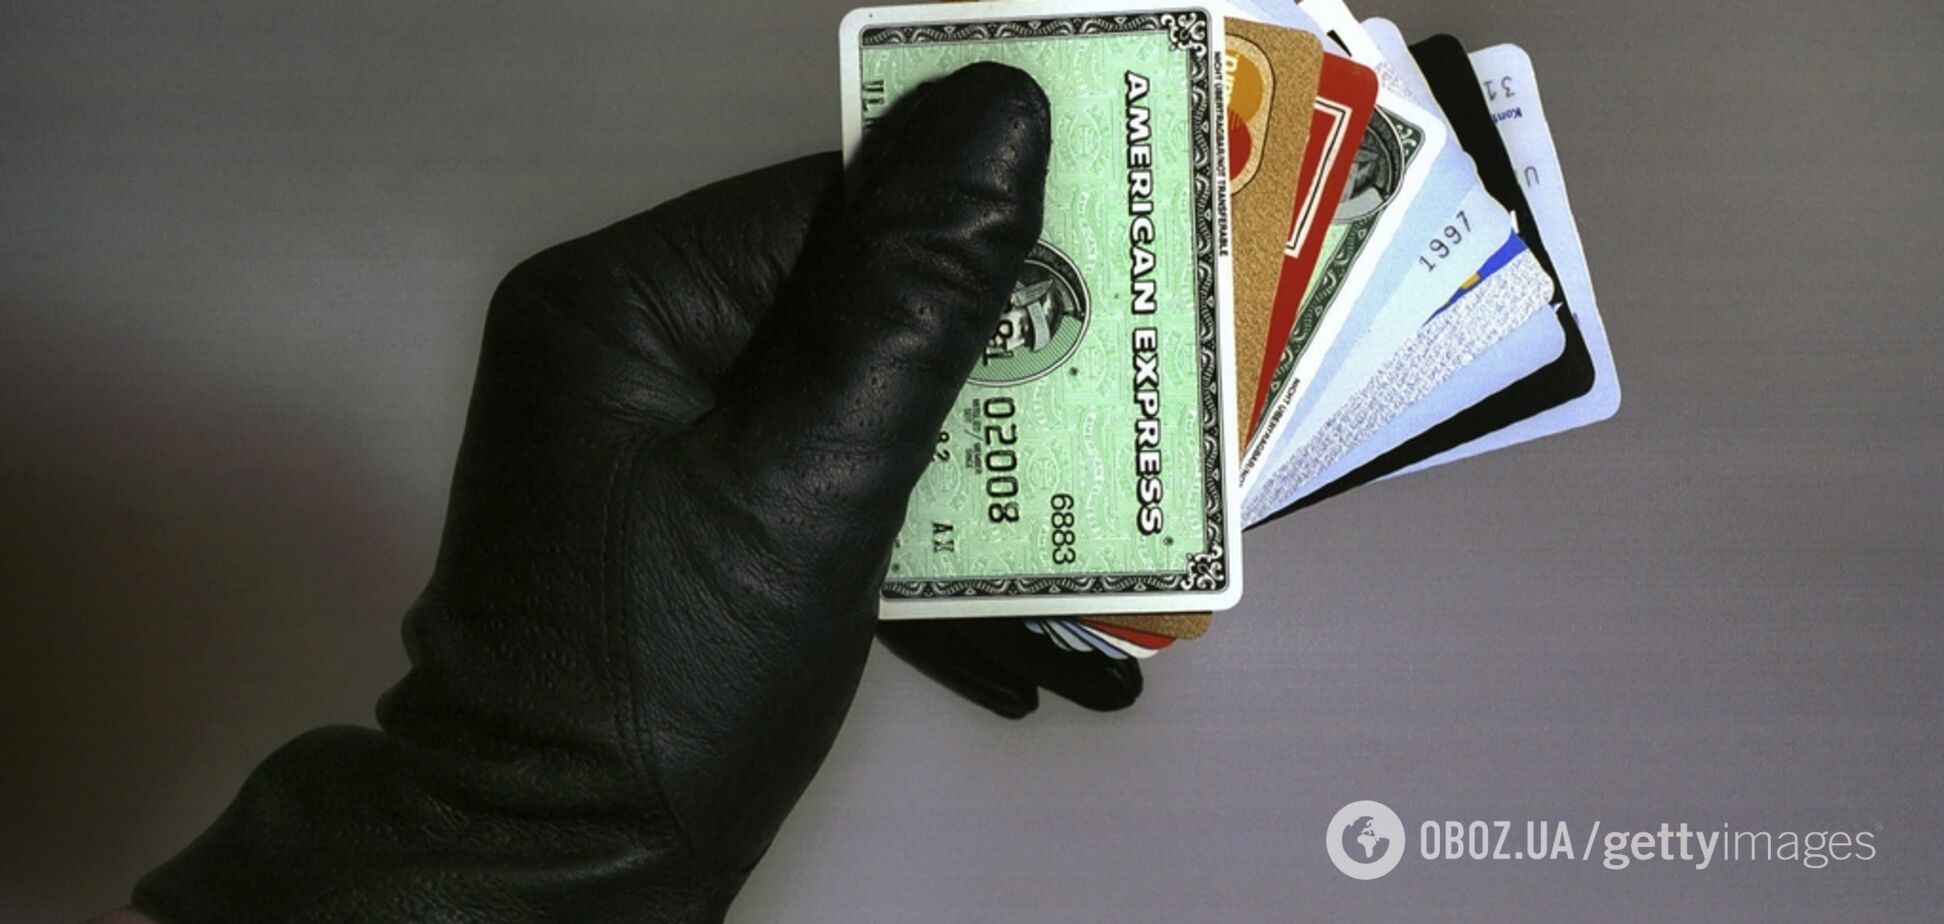 'Достаточно телефона': как мошенники обворовывают счета украинцев